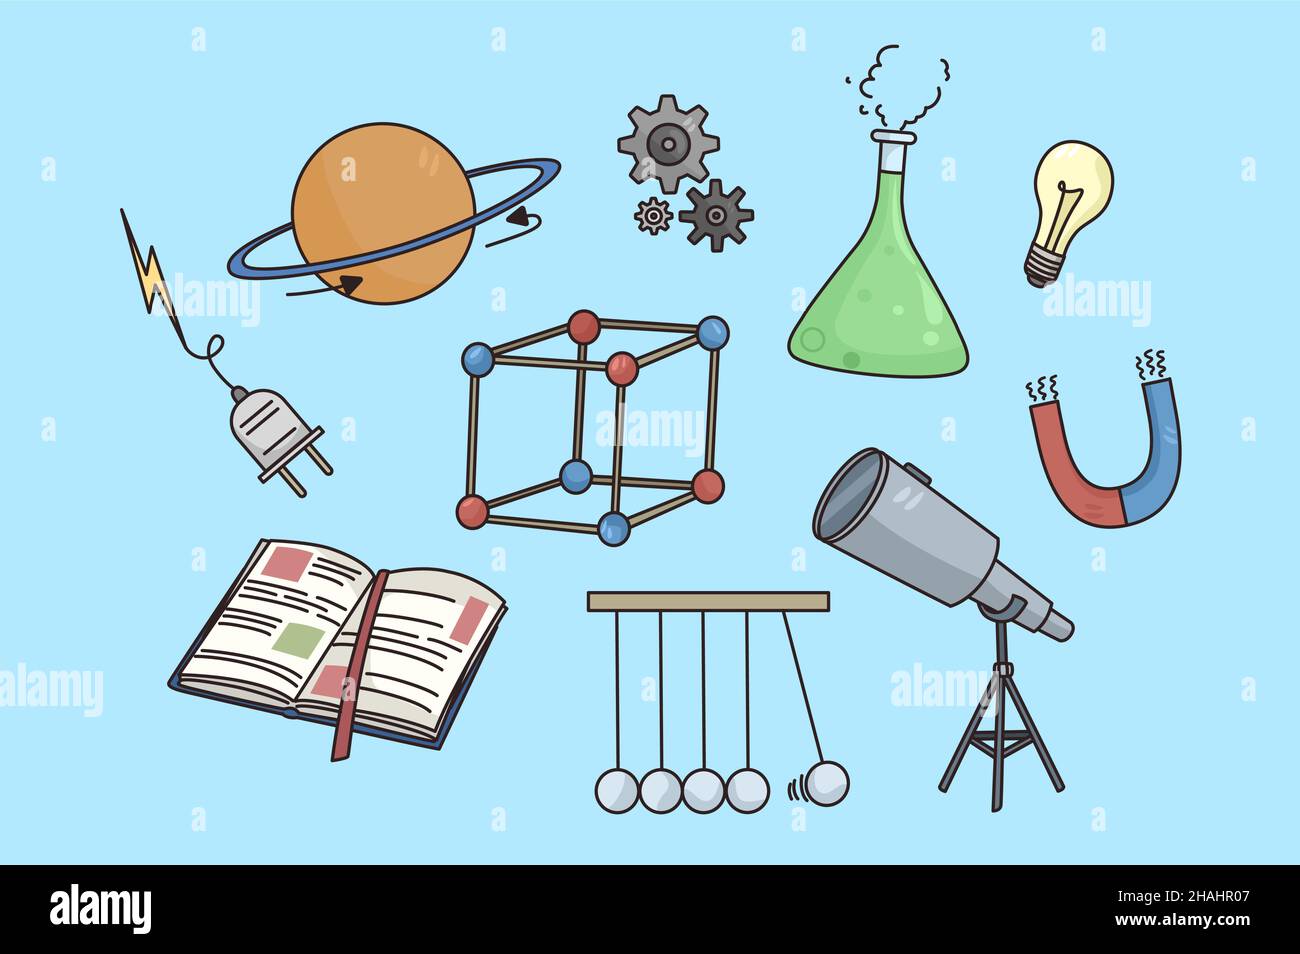 Set di elementi scientifici isolati su sfondo blu. Raccolta di icone chimiche o fisiche dell'attrezzatura. Ricerca in laboratorio di fisica e chimica. Esperimento e scienza. Illustrazione vettoriale. Illustrazione Vettoriale